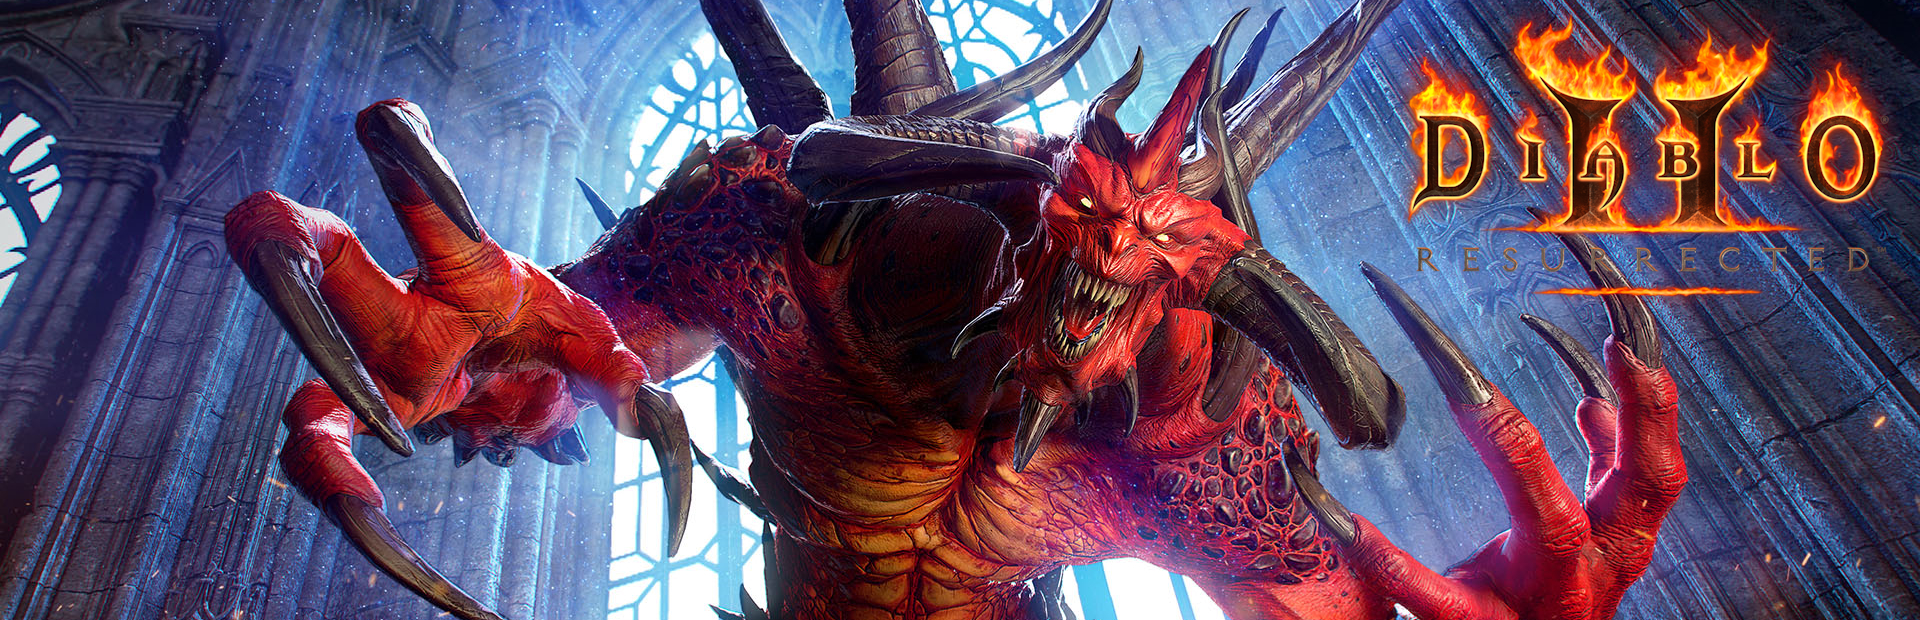 دانلود بازی Diablo II: Resurrected برای PC | گیمباتو